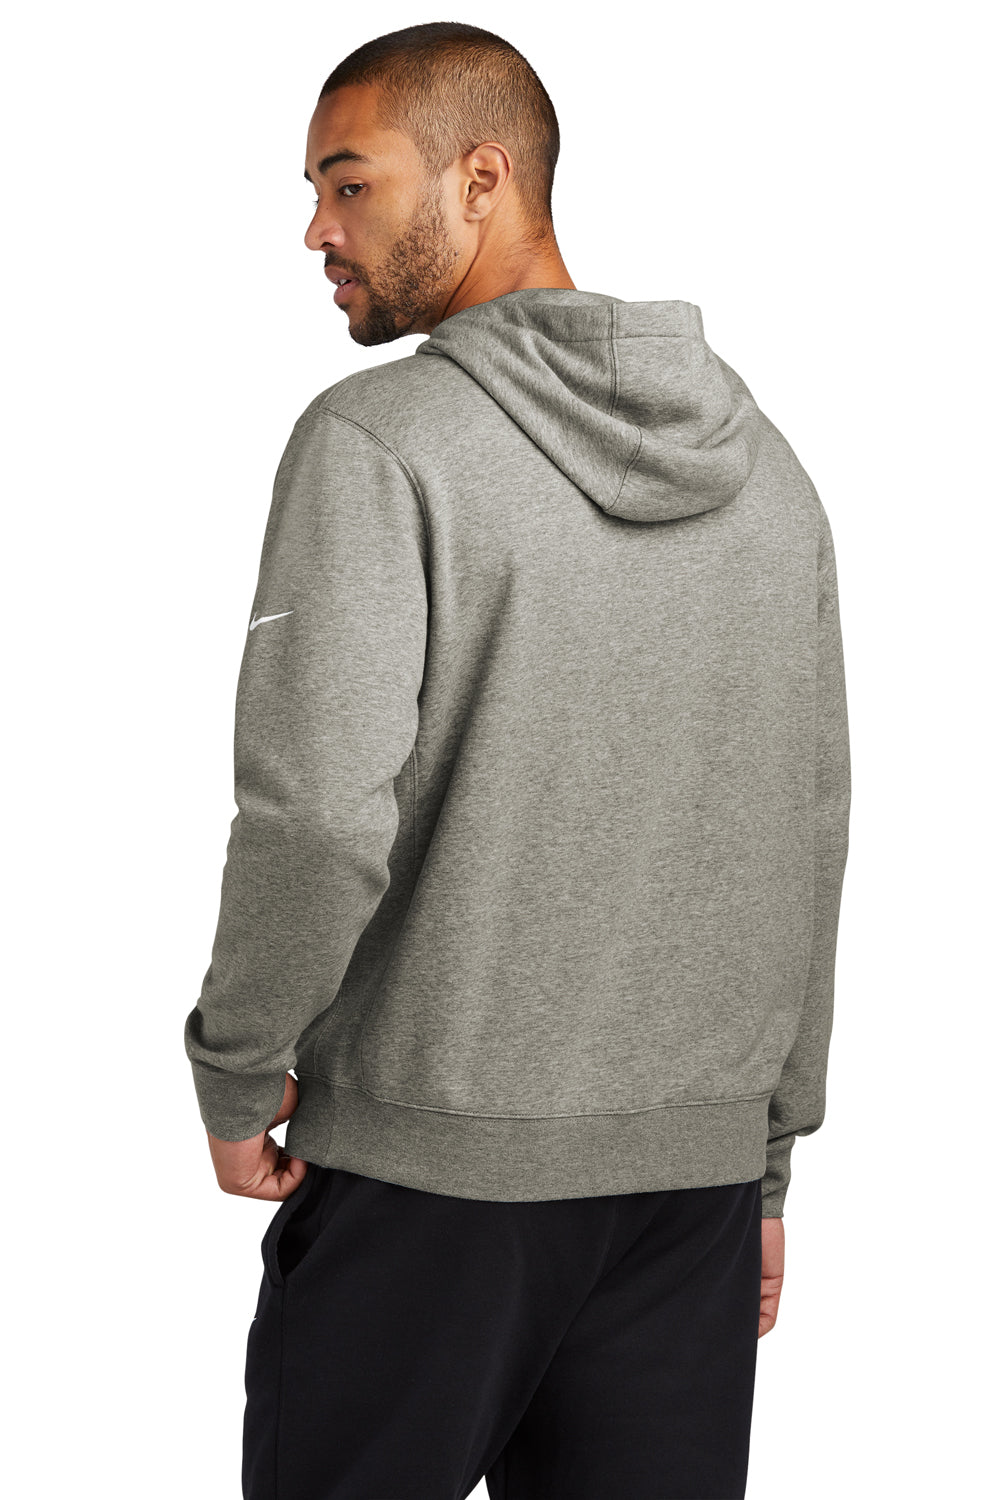 Nike NKDR1499 Mens Club Fleece Hooded Sweatshirt Hoodie Heather Dark Grey Model Back